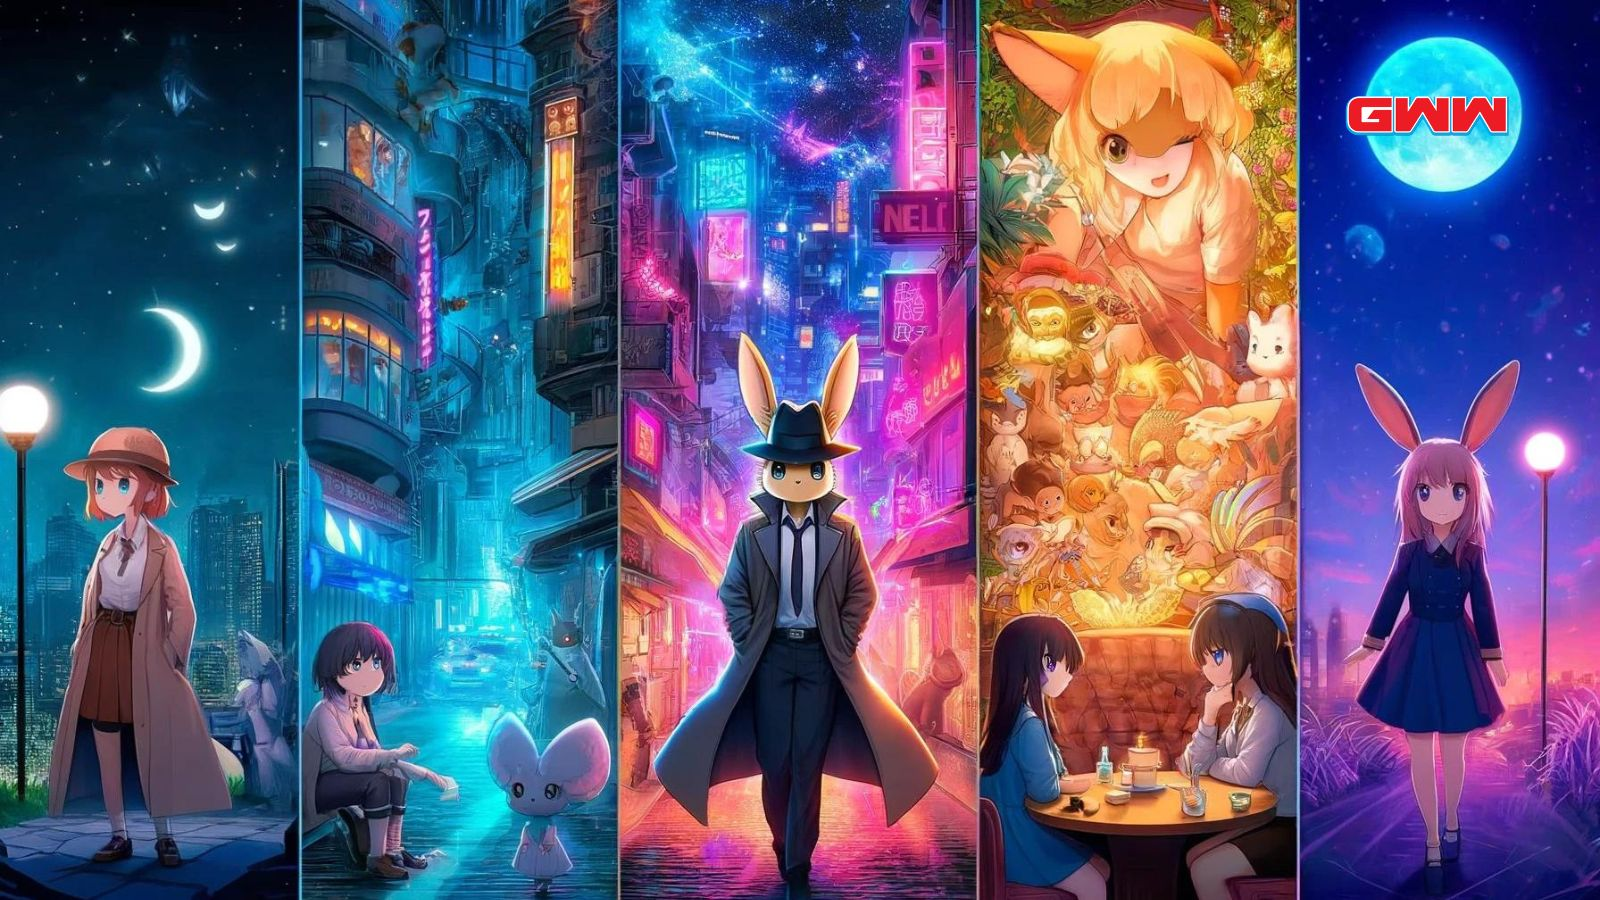 Una ilustración de estilo anime que visualiza creativamente diferentes géneros de anime dentro de una ciudad habitada por animales antropomórficos.